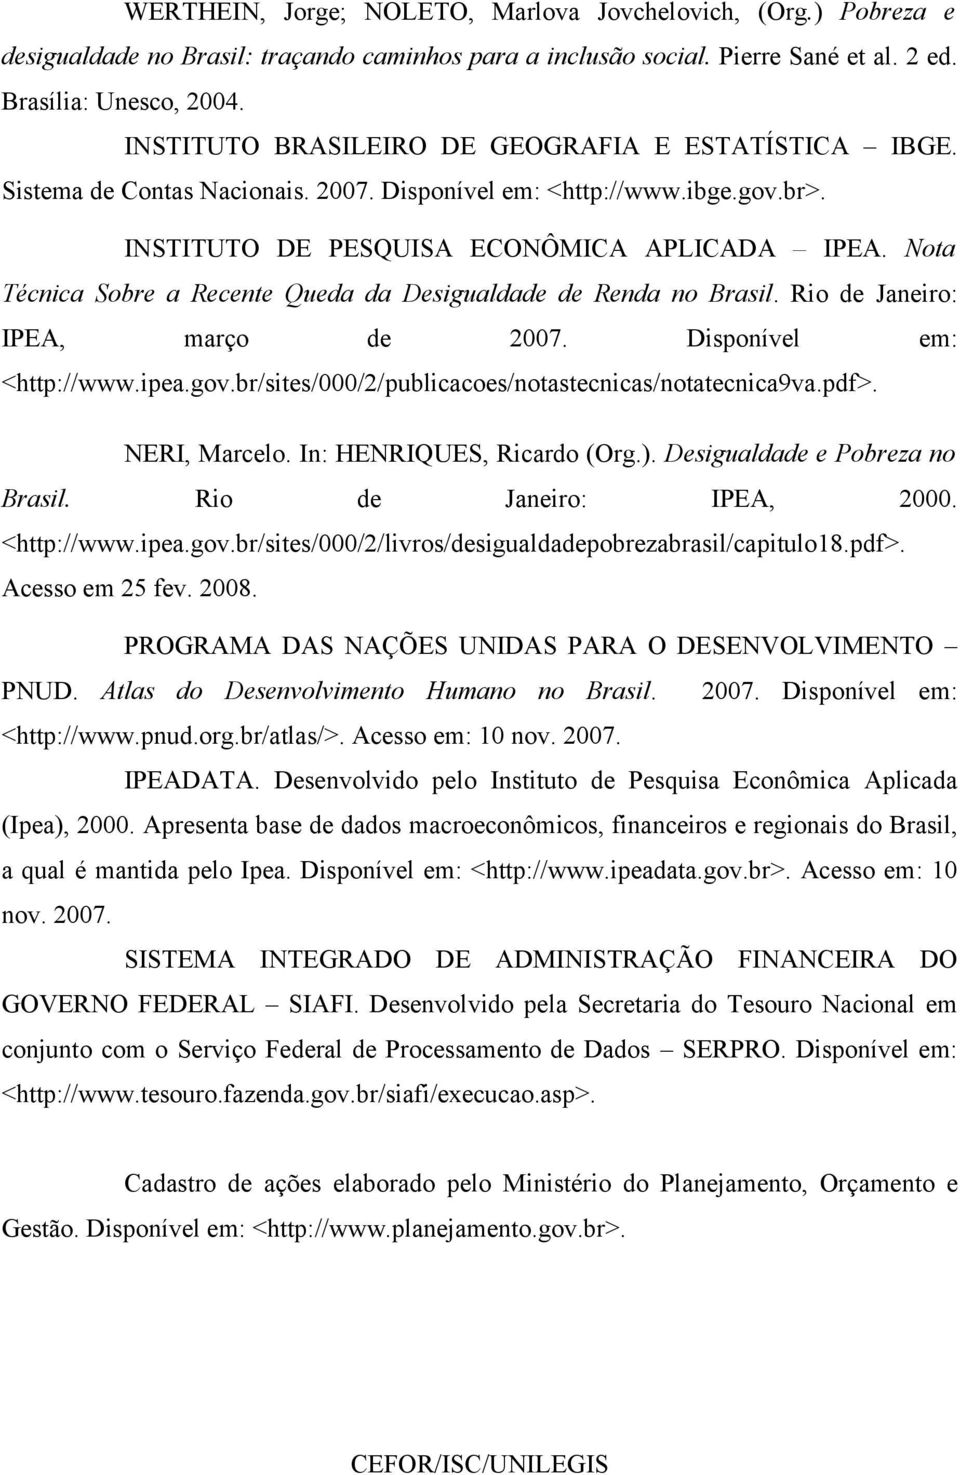 Nota Técnica Sobre a Recente Queda da Desigualdade de Renda no Brasil. Rio de Janeiro: IPEA, março de 2007. Disponível em: <http://www.ipea.gov.br/sites/000/2/publicacoes/notastecnicas/notatecnica9va.